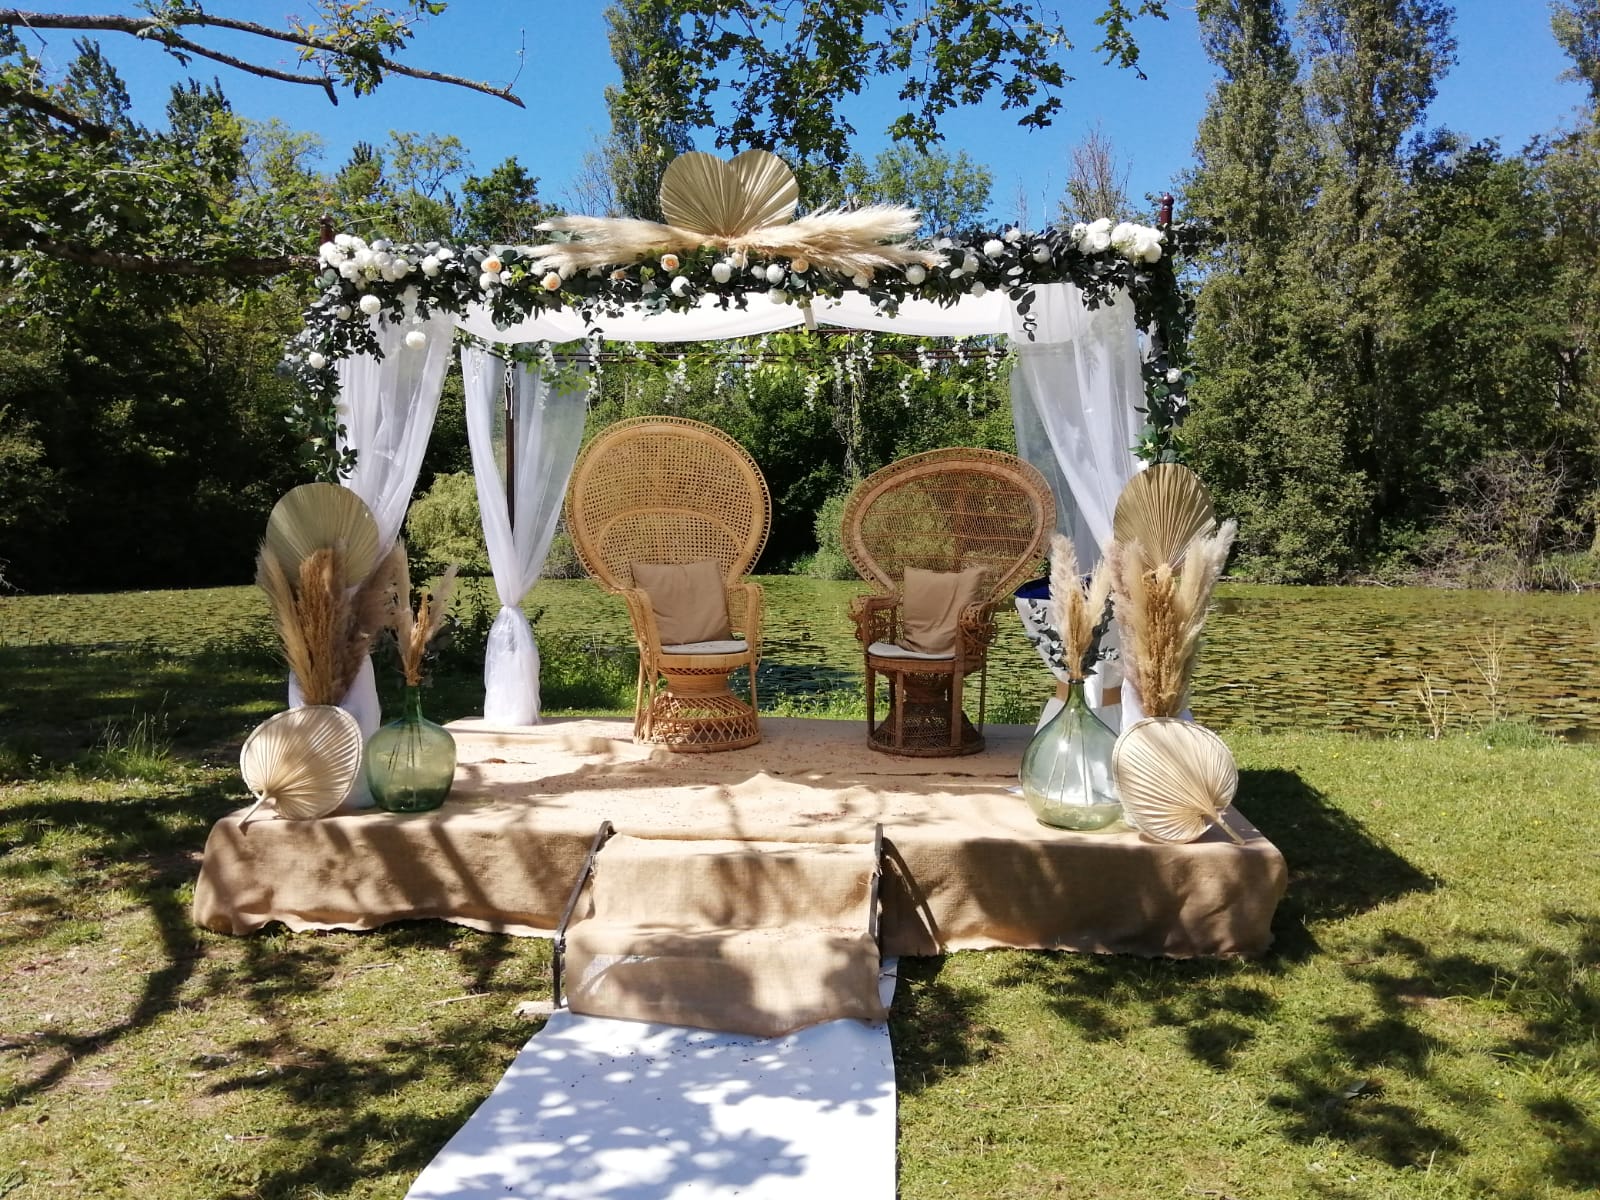 Houppa en fleurs séchées - Mariage juif - C&D Events - Wedding planner / Organisatrice de mariage dans l'Oise